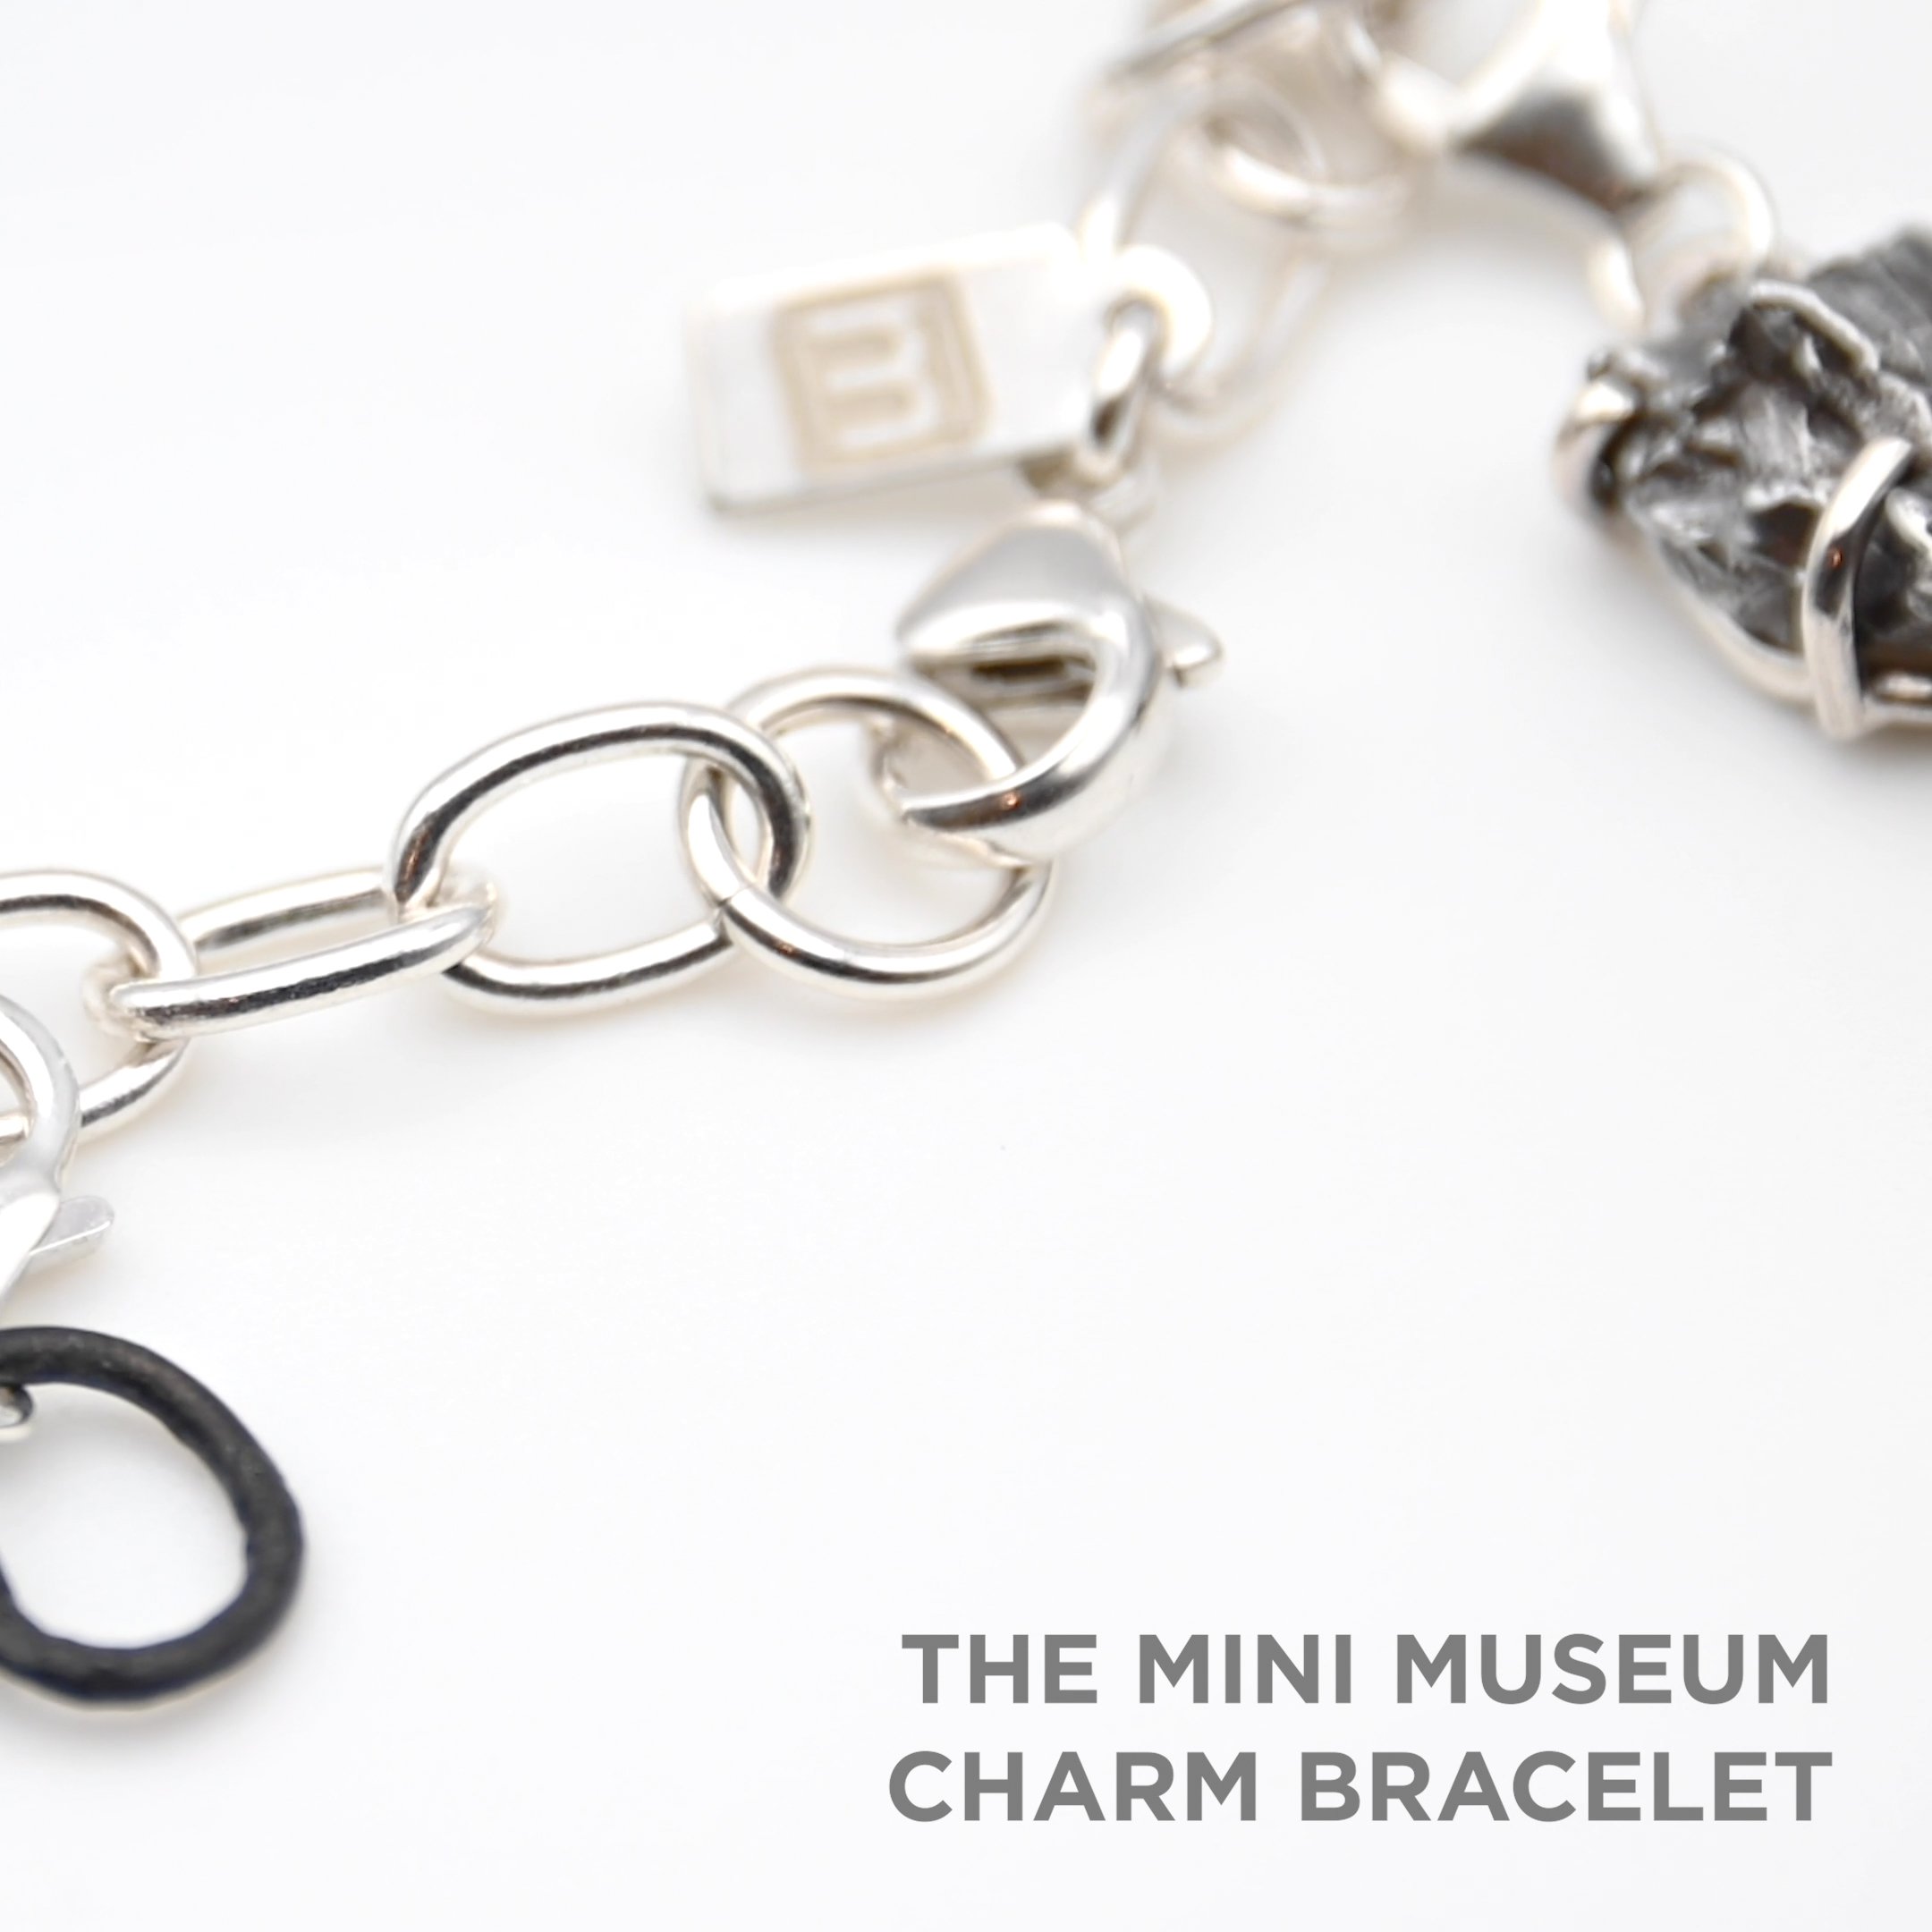 The Mini Museum Charm Bracelet